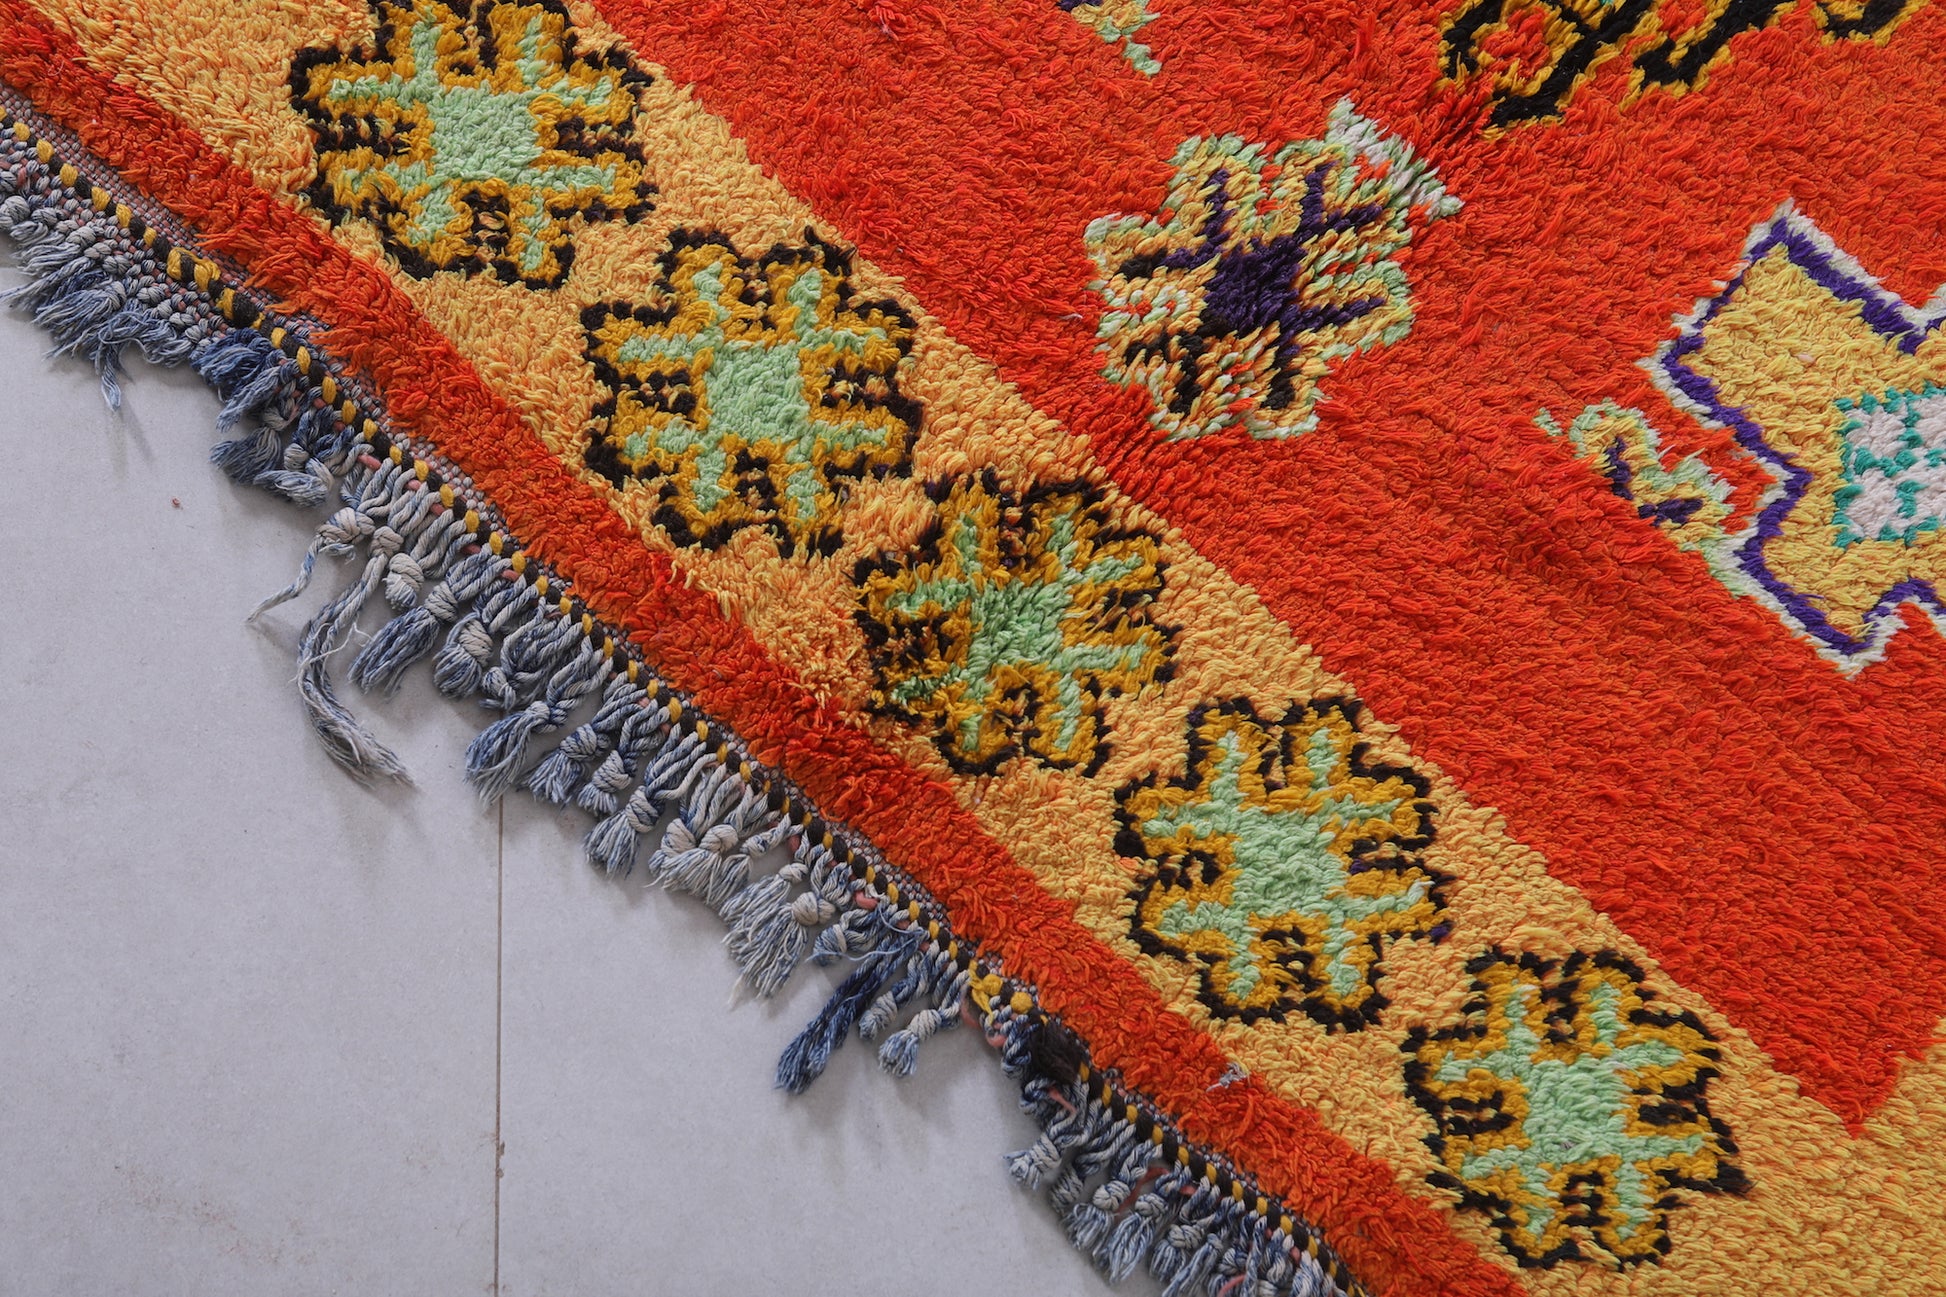 Moroccan rug 4.8 X 8.7 Feet